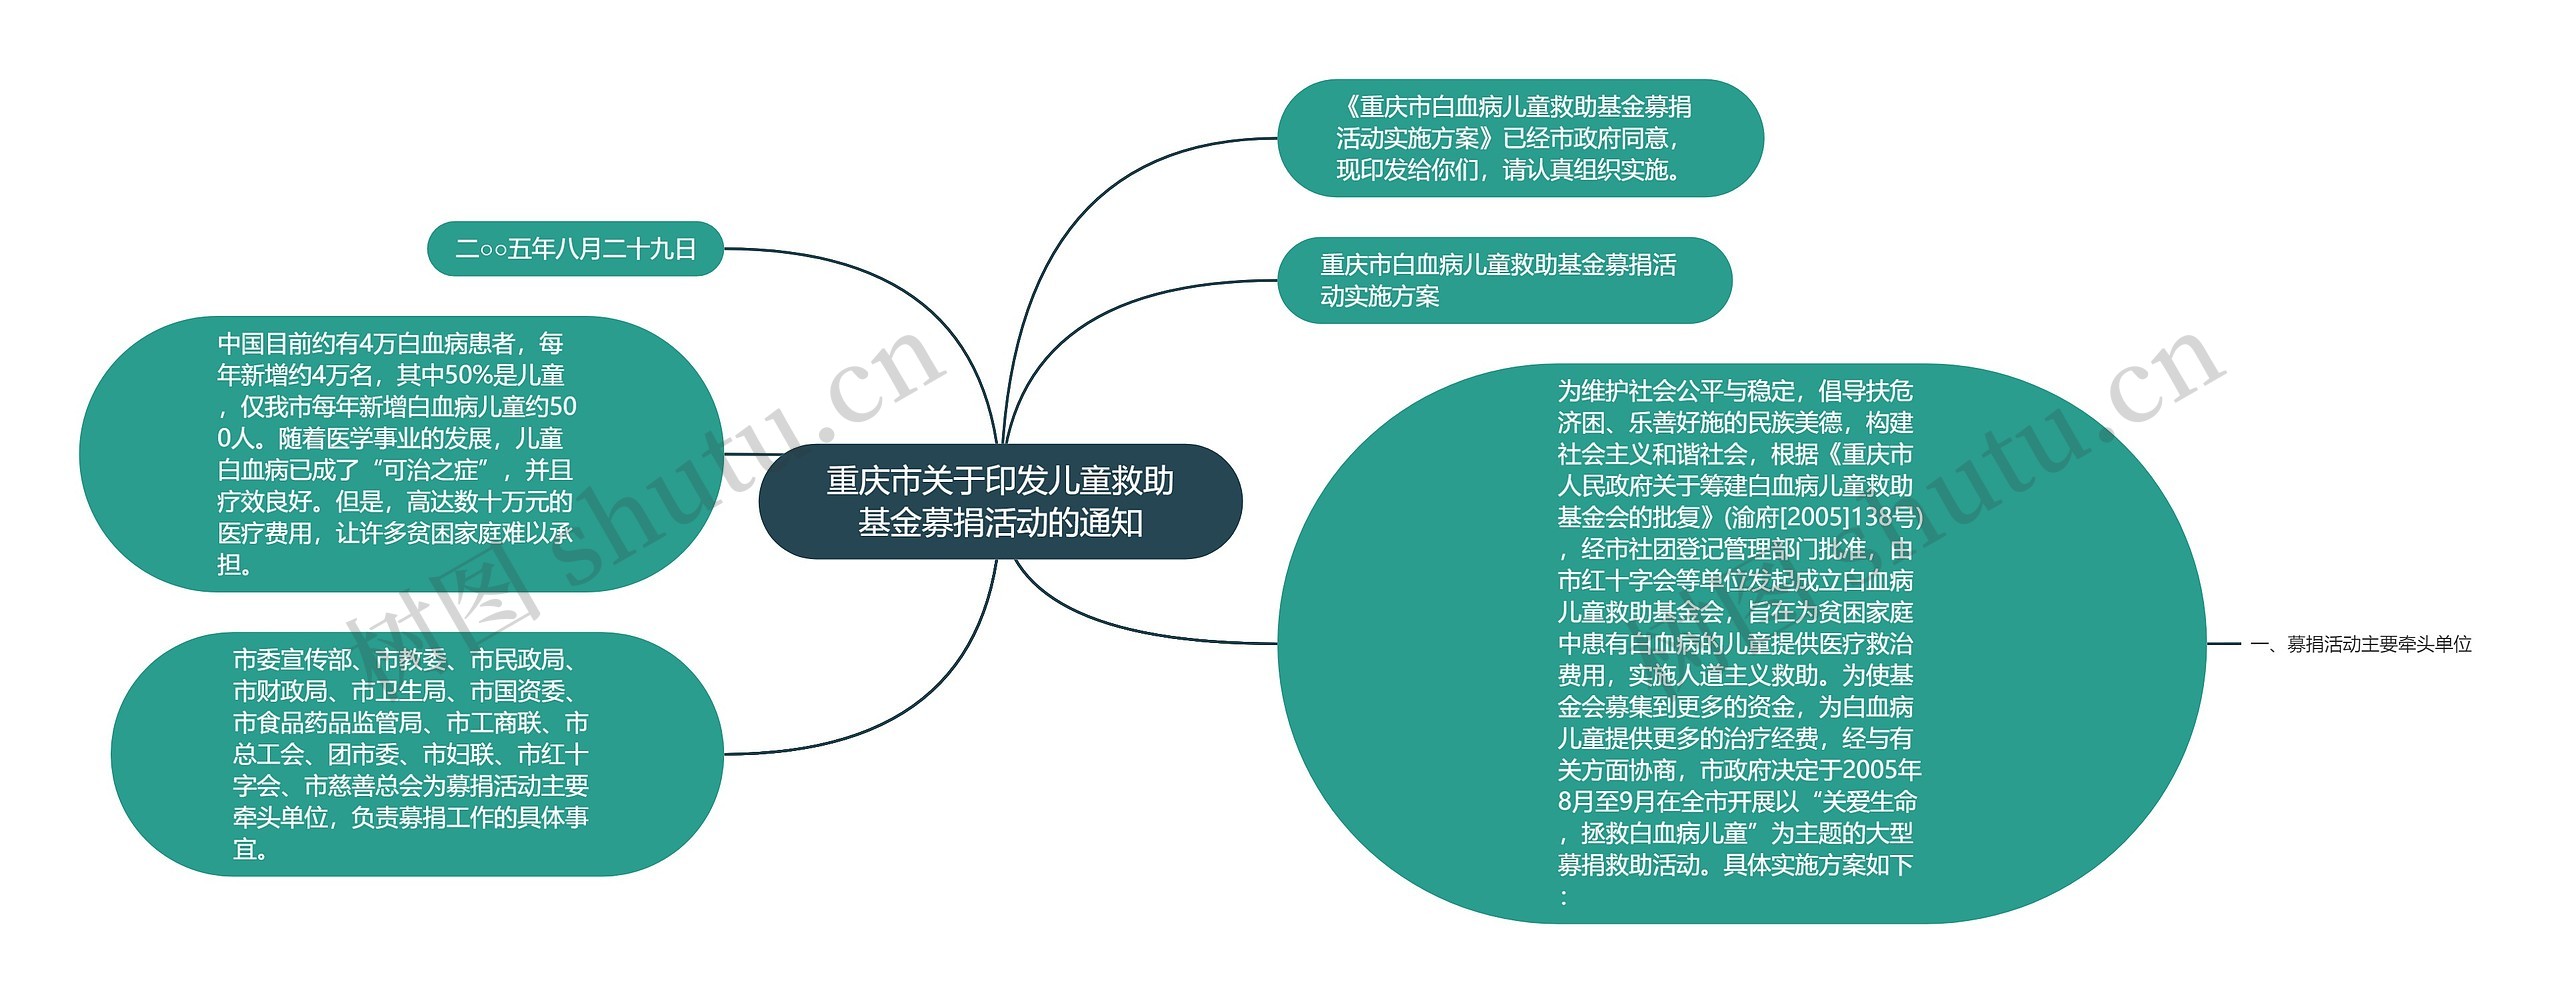 重庆市关于印发儿童救助基金募捐活动的通知思维导图